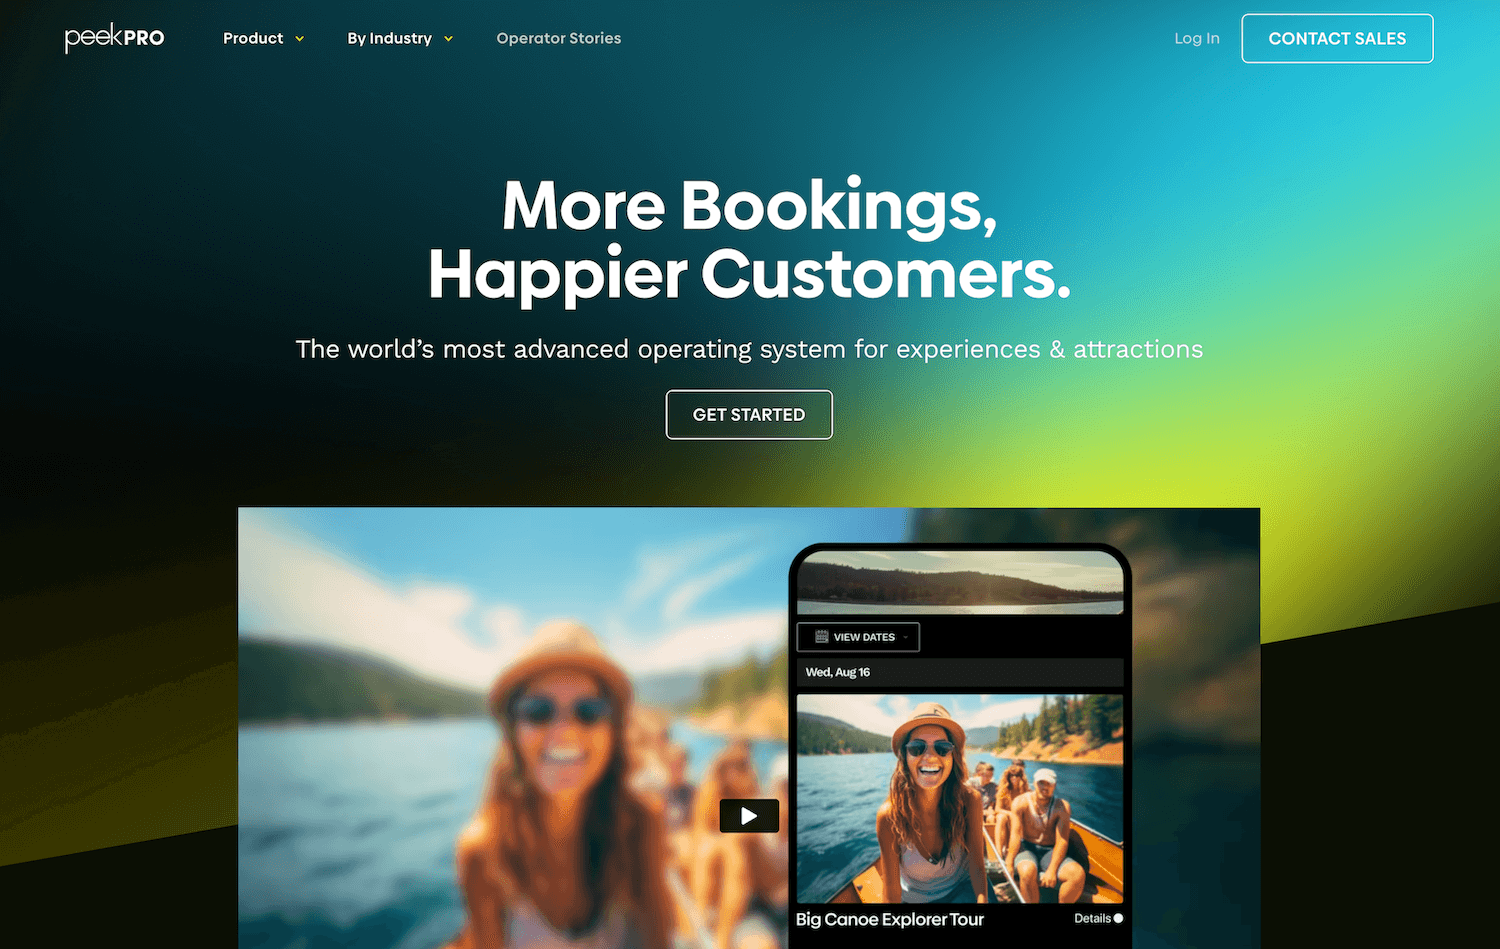 Peek Pro homepage: More Bookings, Happier Customers